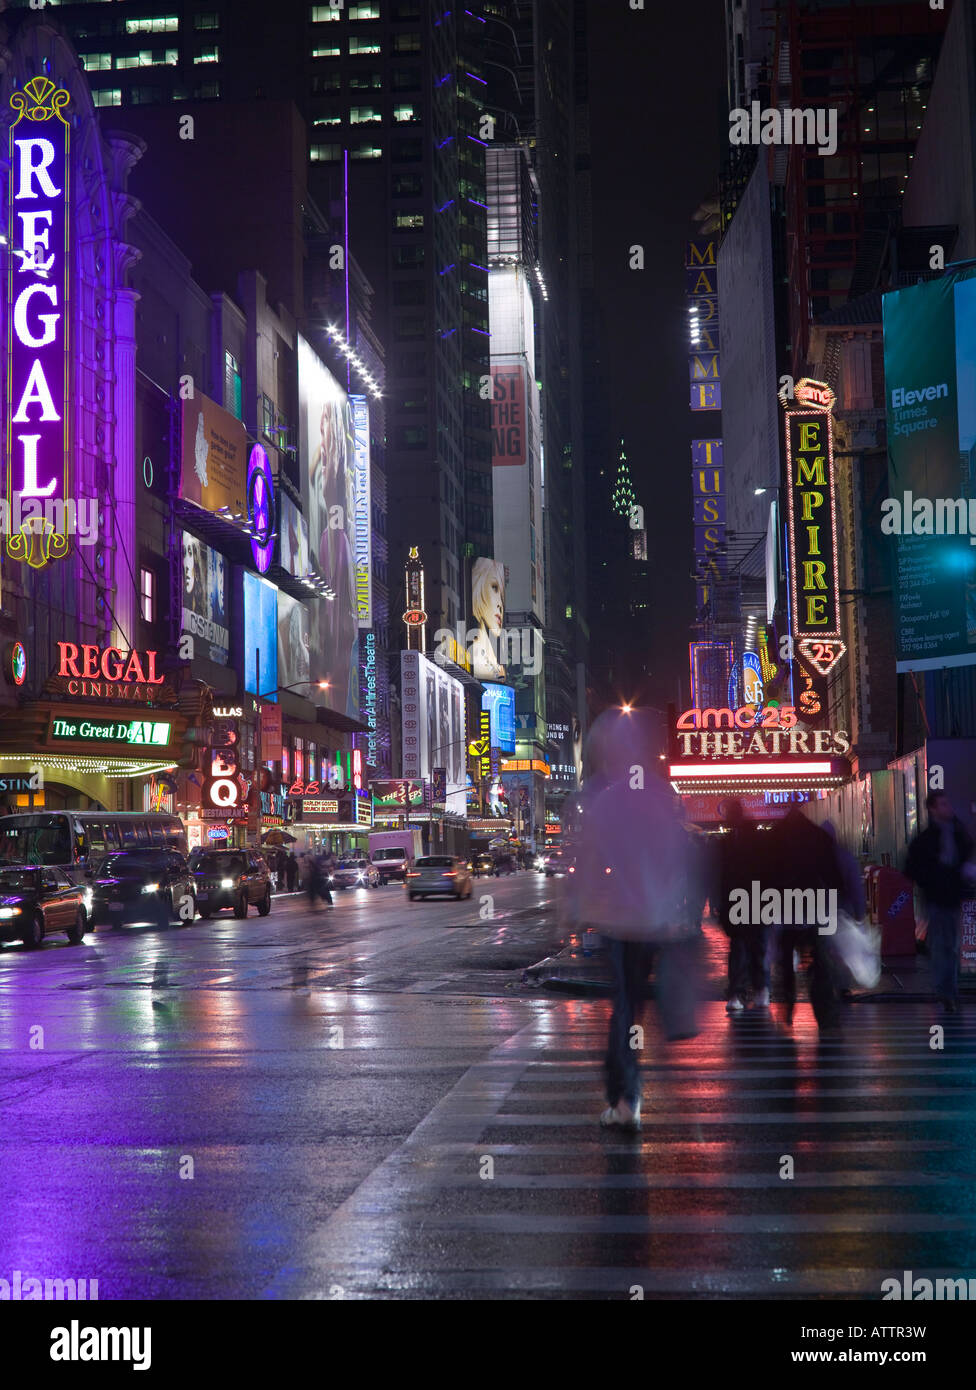 Vue de nuit de la 42nd Street, quartier de Times Square, New York, Etats-Unis Banque D'Images